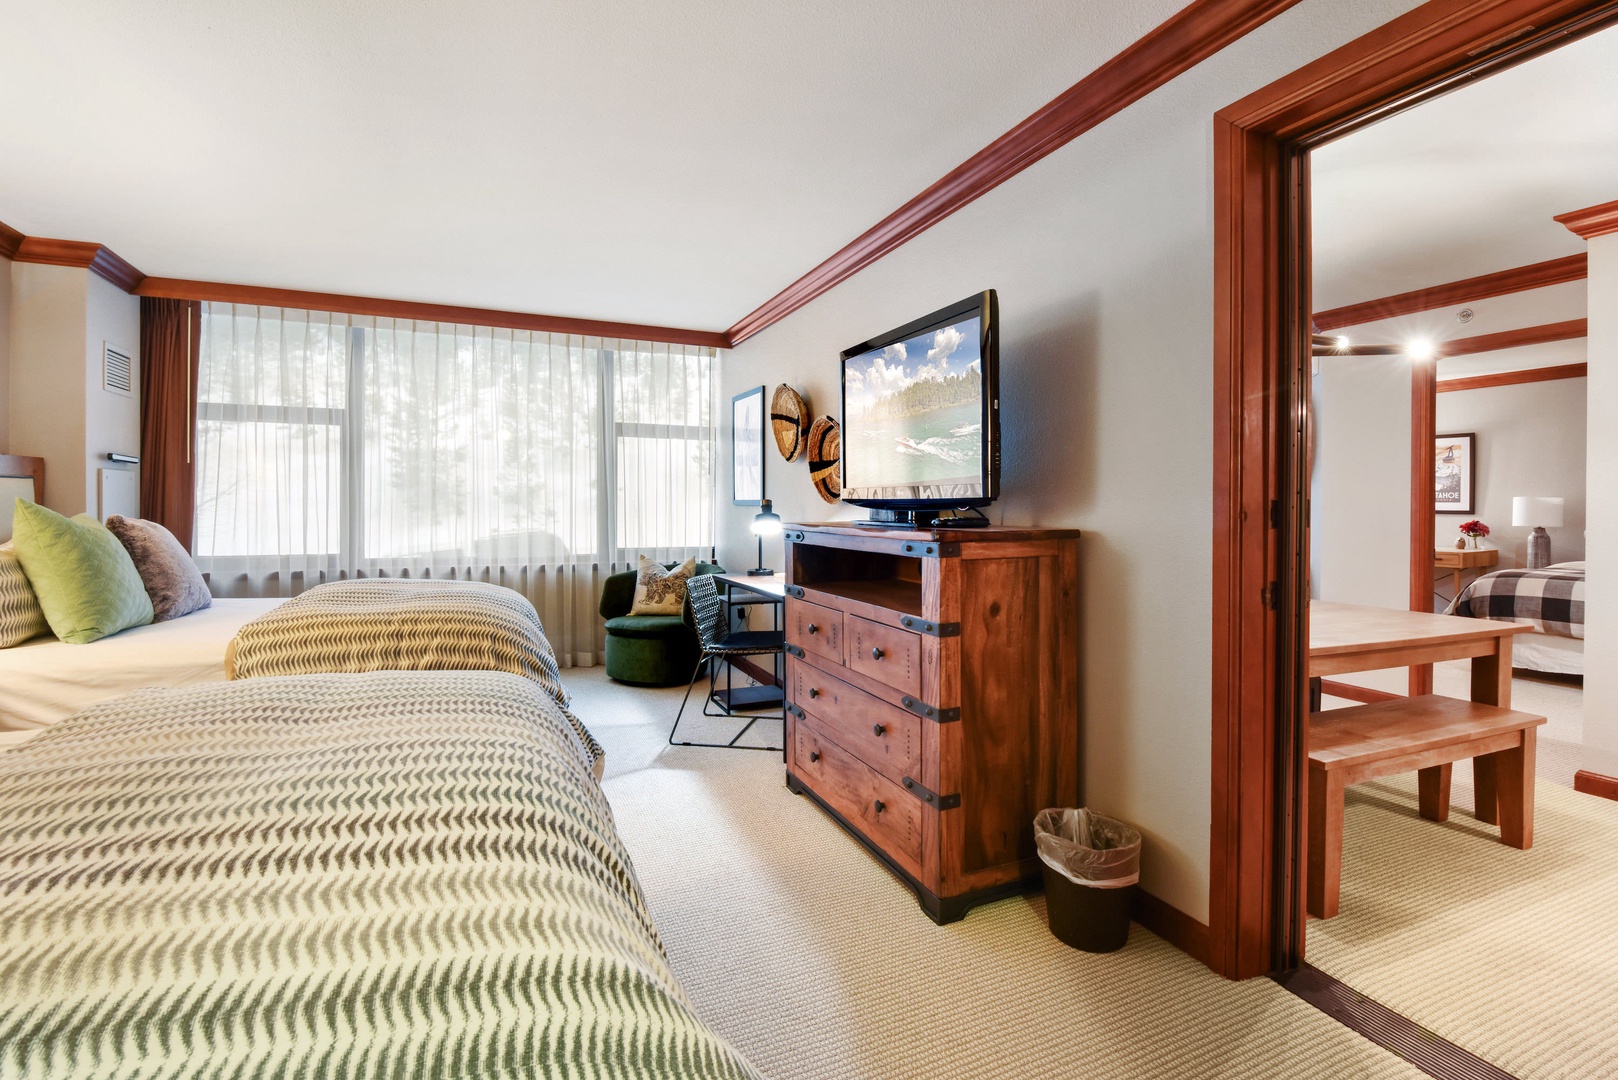 2nd bedroom: 2 Queen beds, small workspace, TV